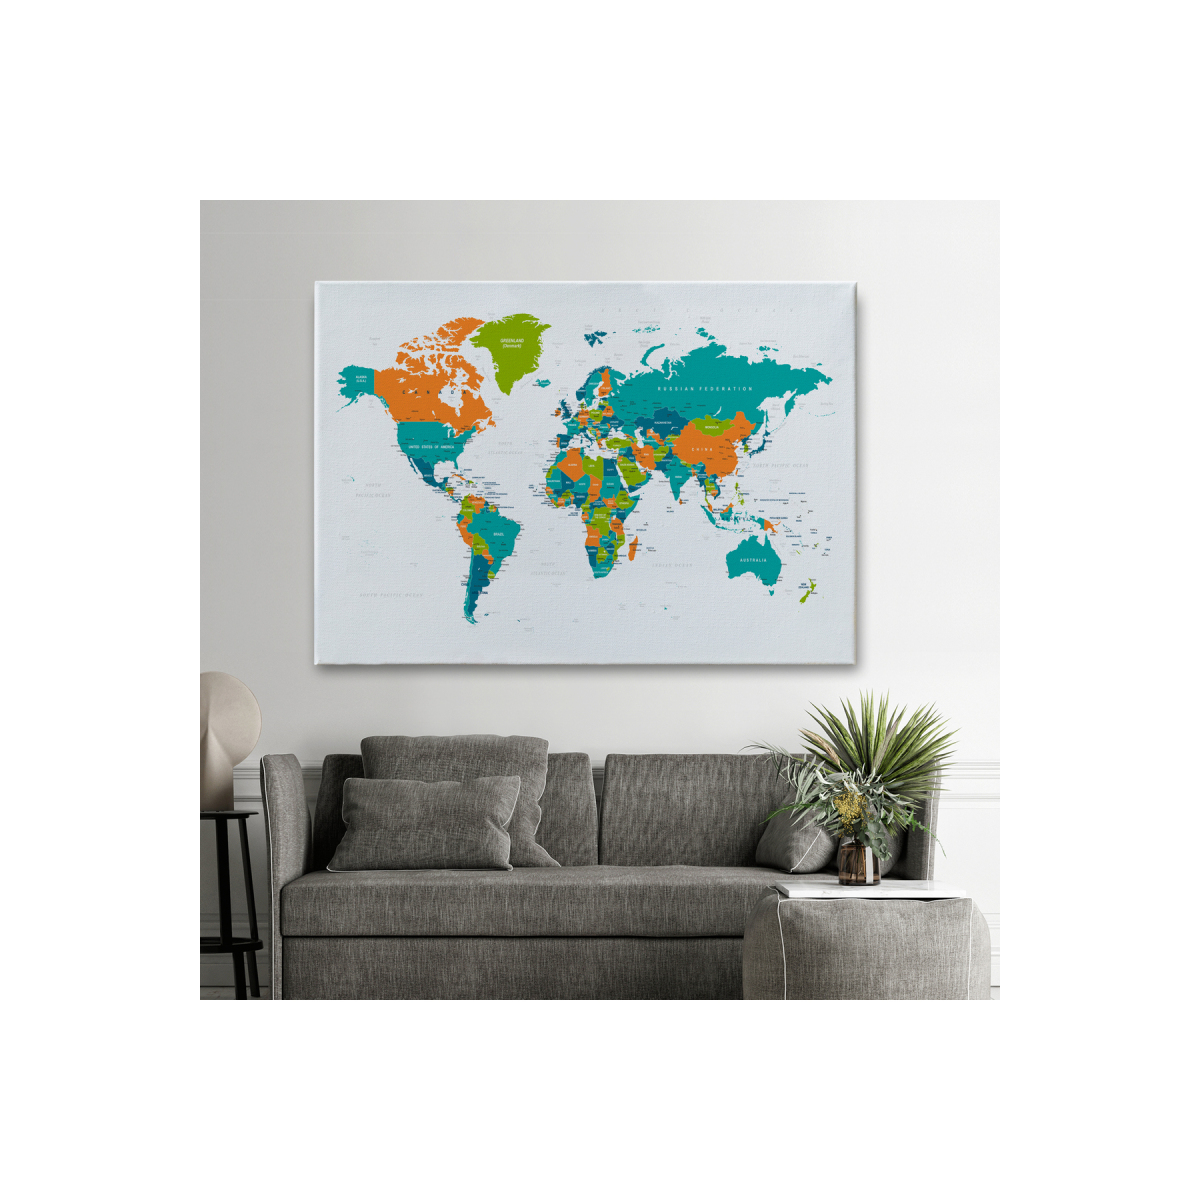 Modagos068 Dünya Haritası  Dekoratif Kanvas Tablo 1085